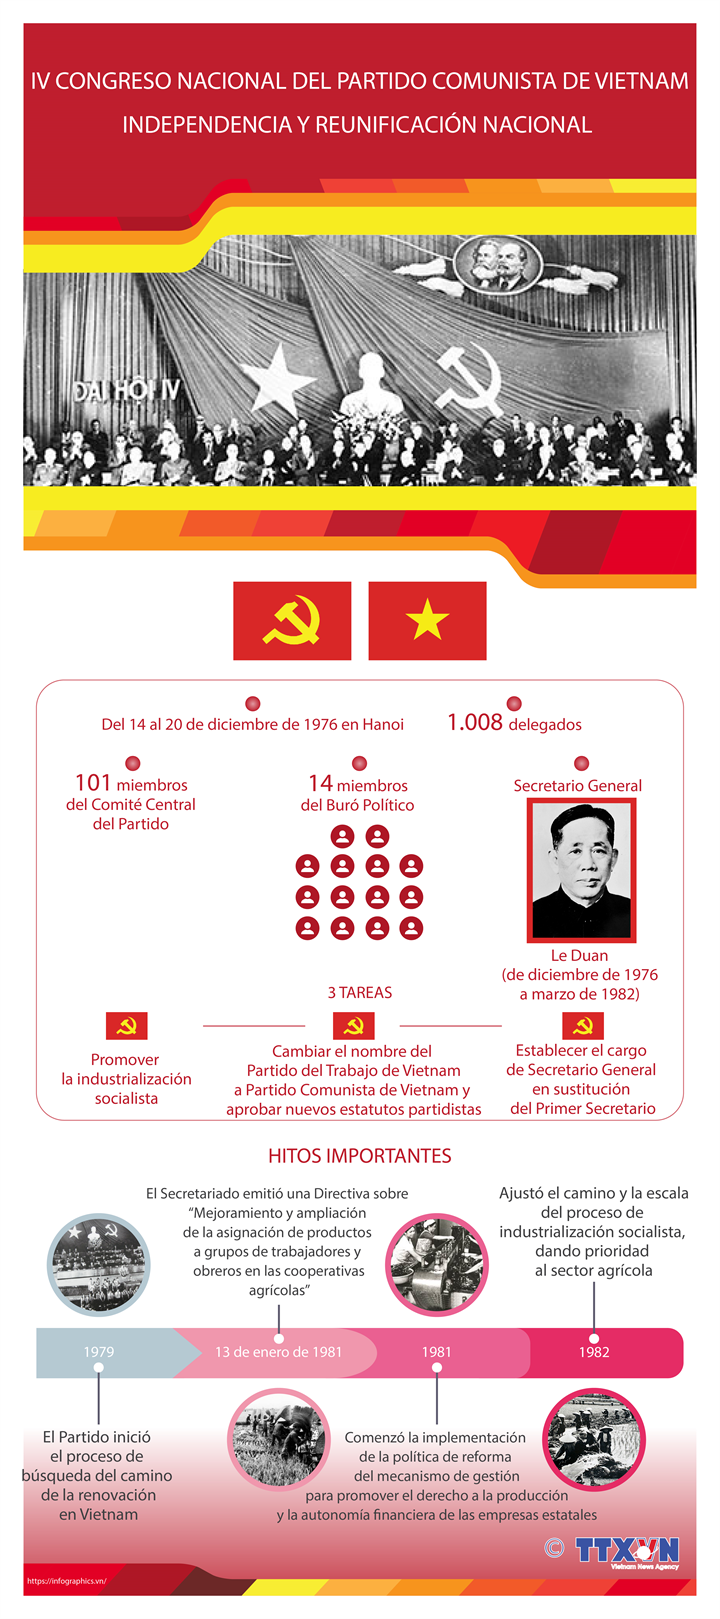 IV Congreso Nacional del Partido Comunista de Vietnam